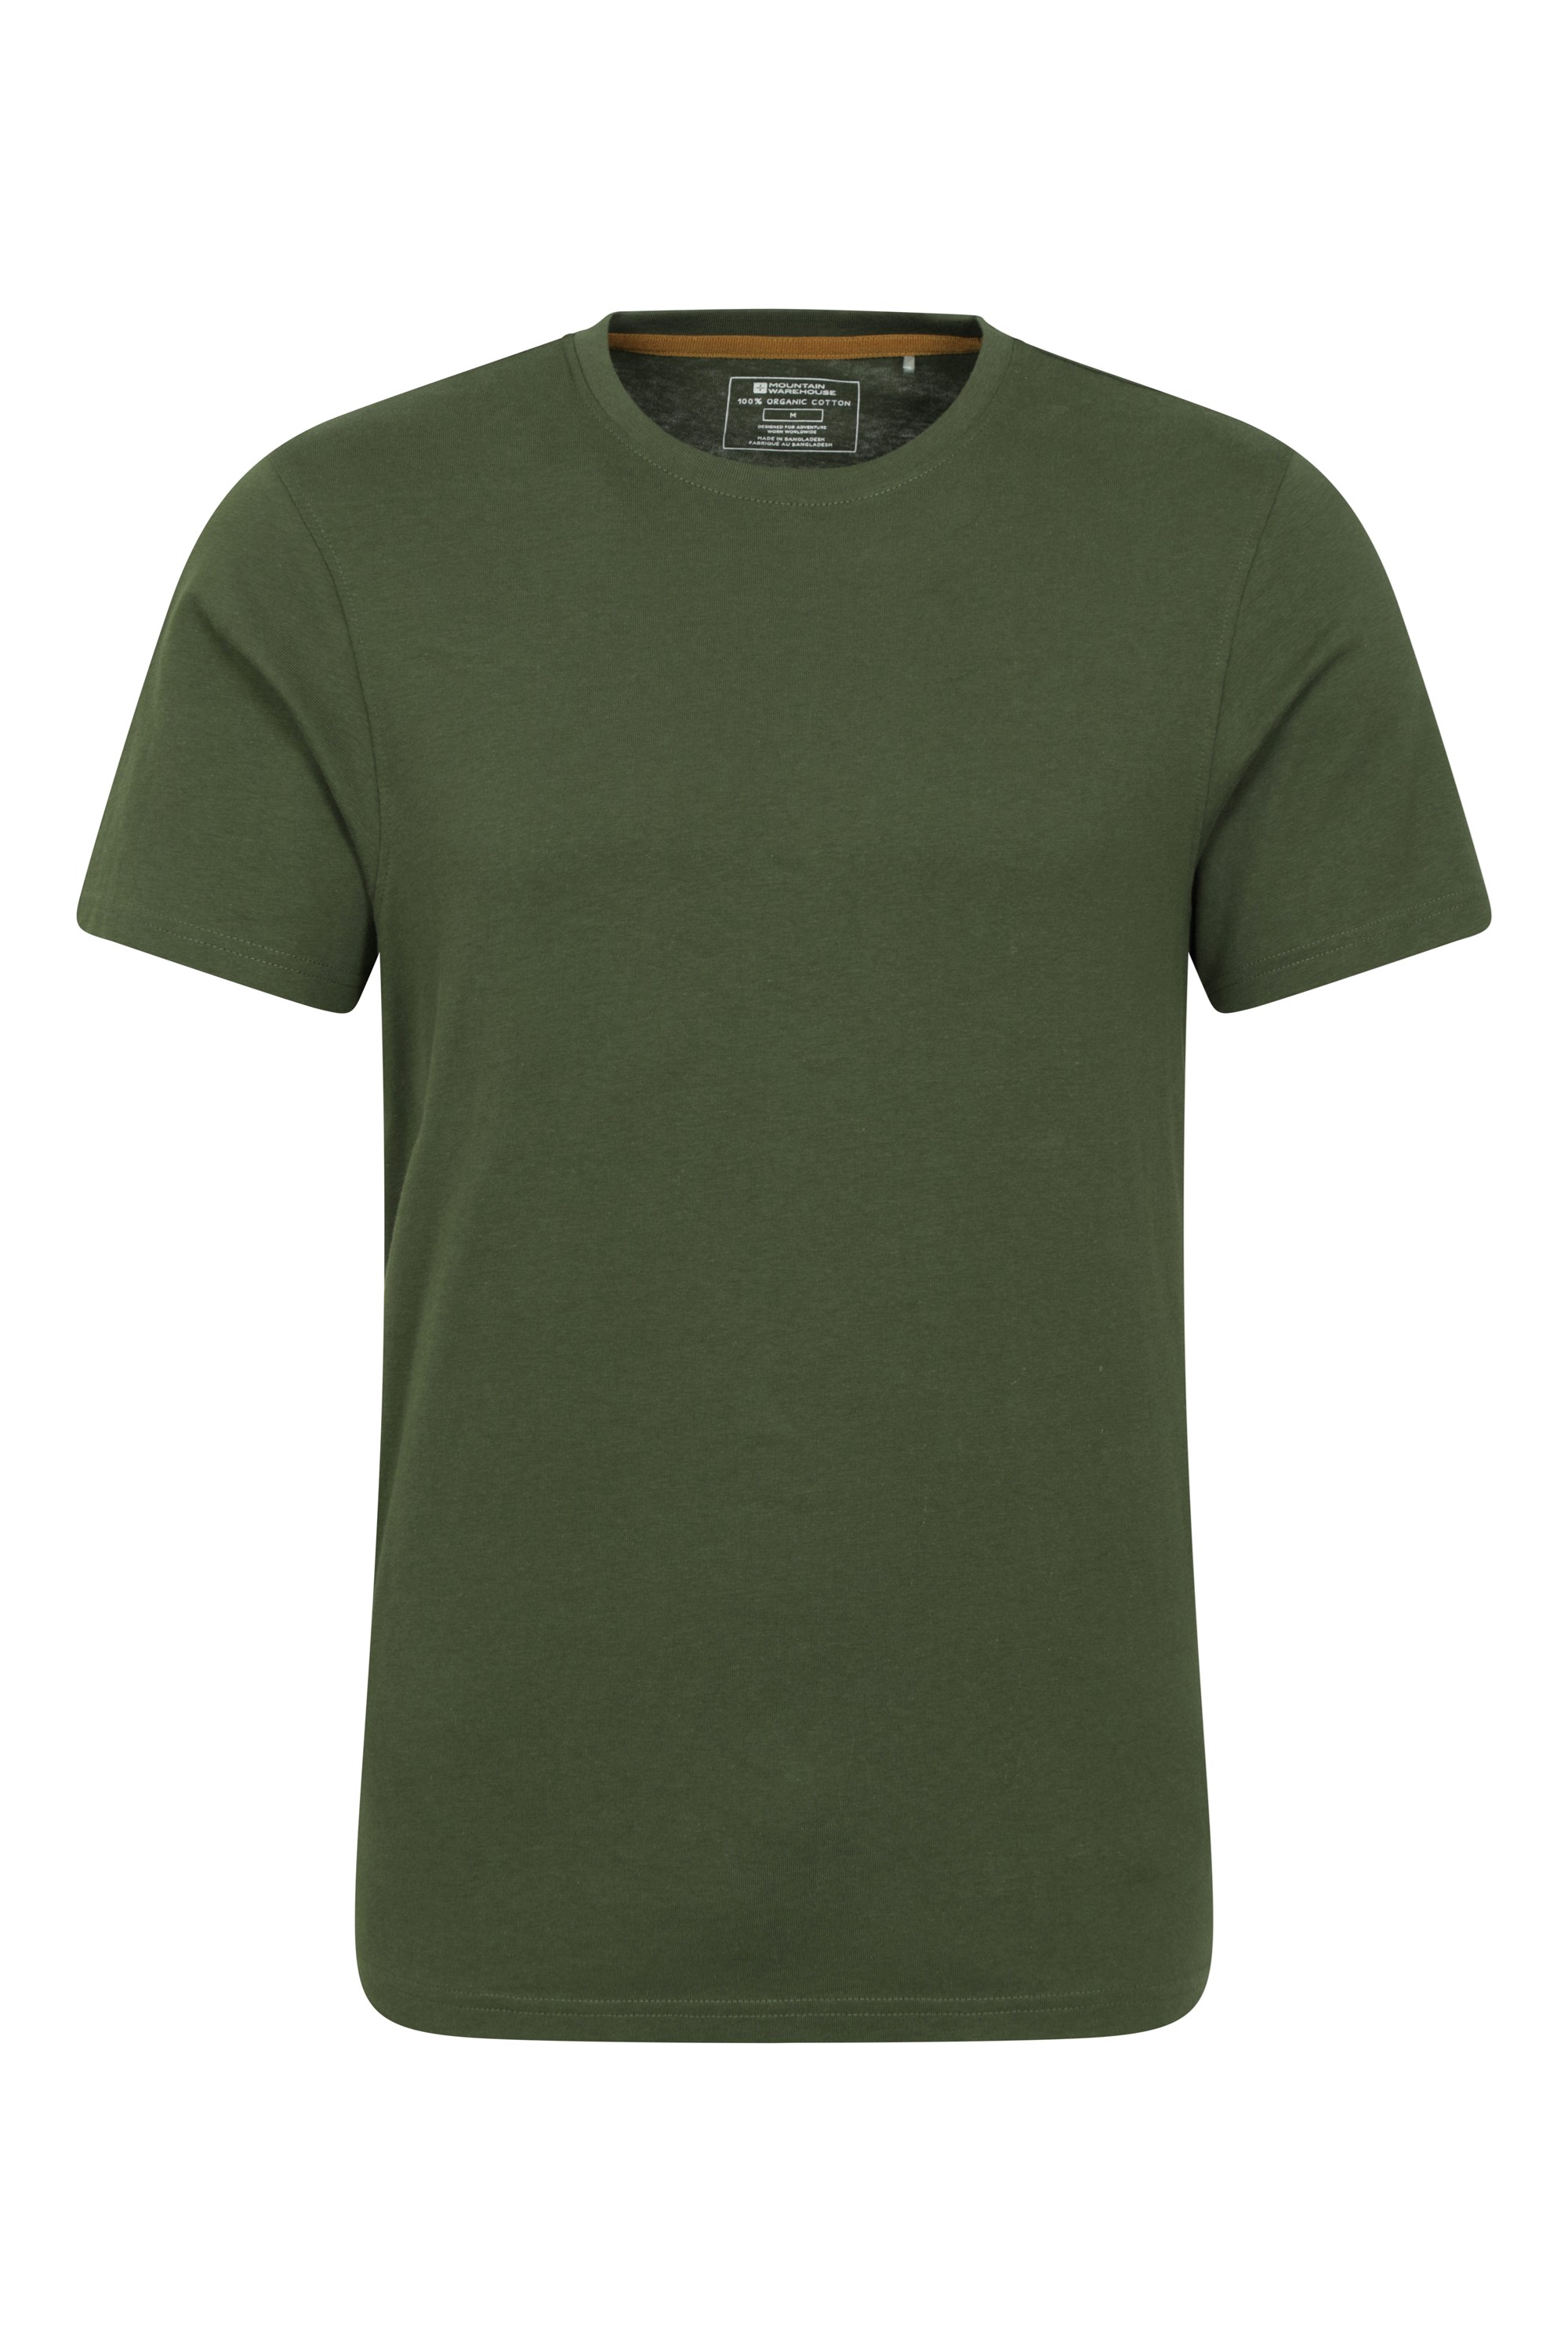 Eden Mens Organic Plain T-shirt - Green